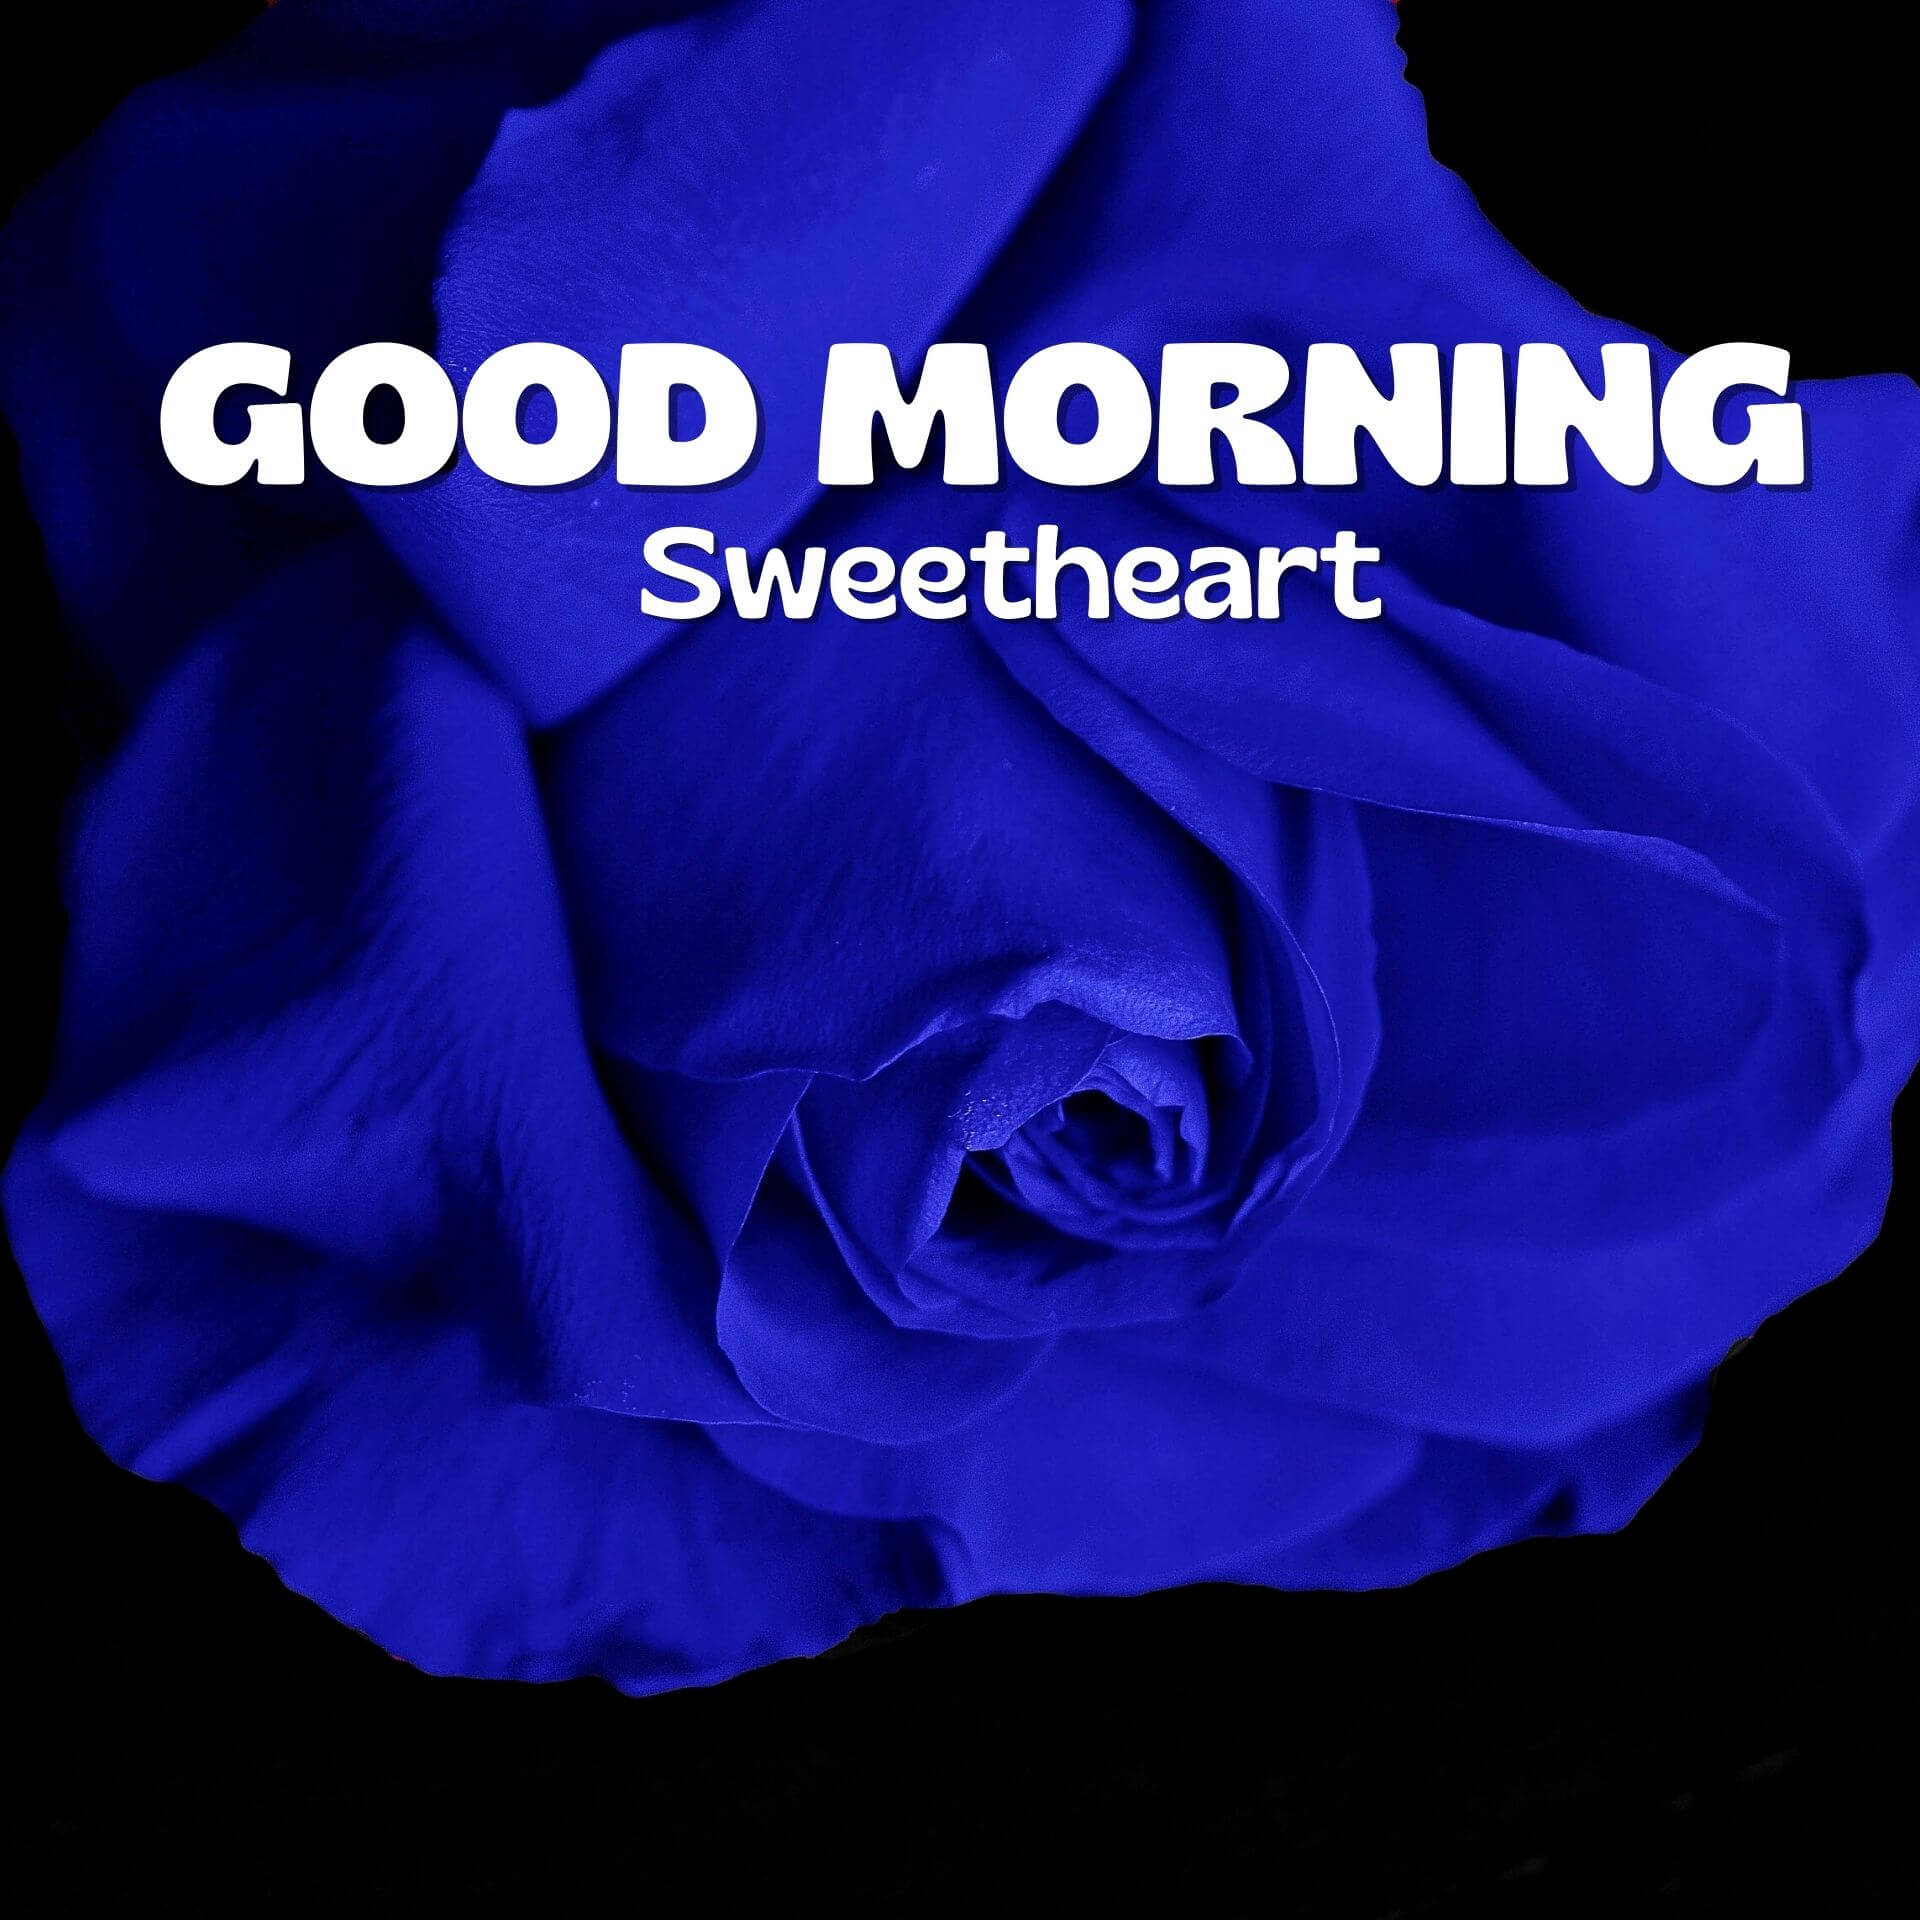 Romantic Good Morning Wallpaper pics Download 2